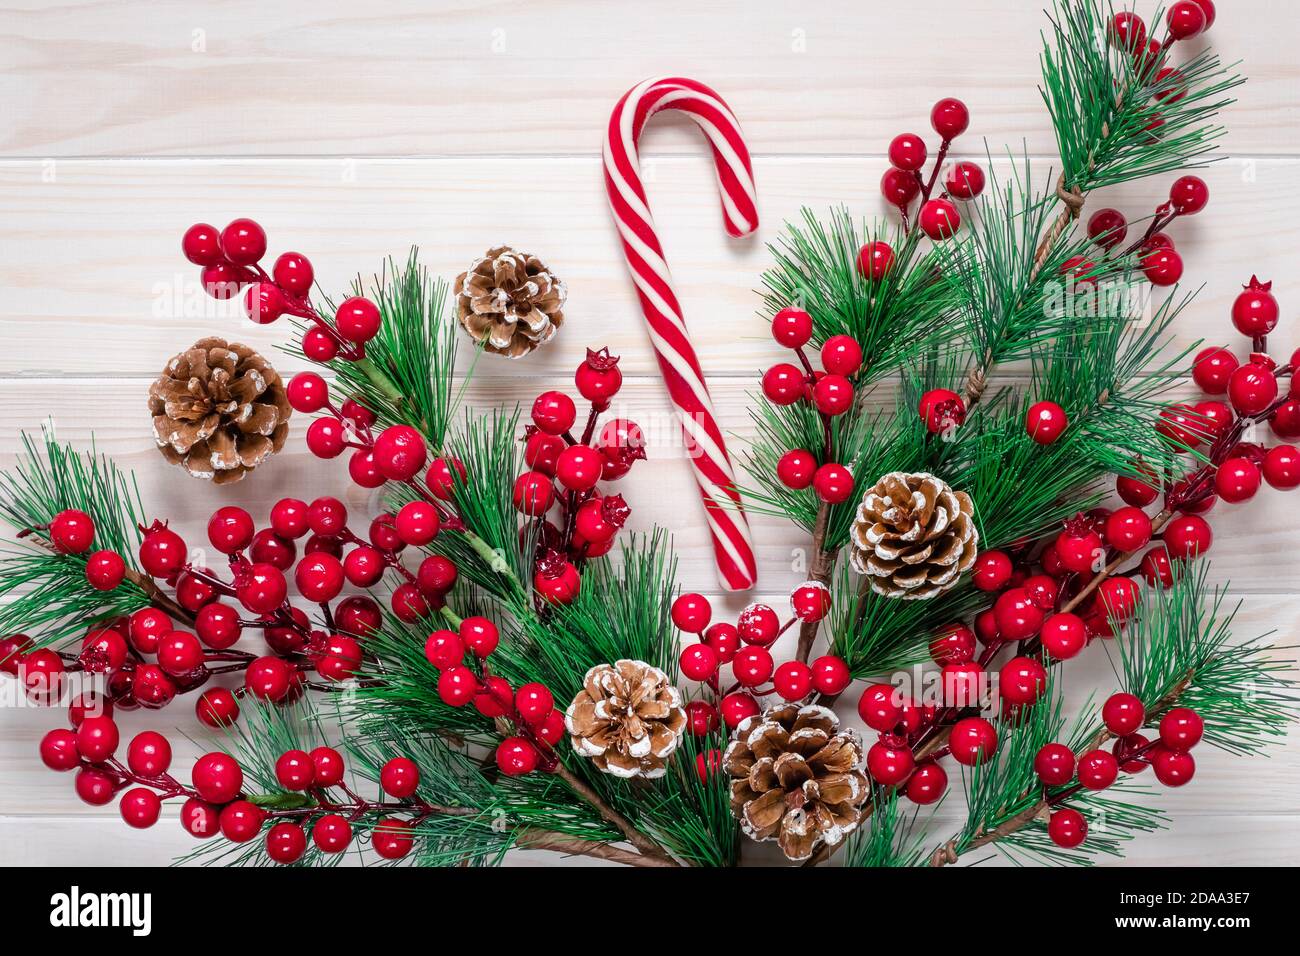 Saison de Noël. Christmastime, carte cadeau avec canne à sucre à rayures rouges. Décoration d'hiver avec branches de pin, cônes et houx berrie Banque D'Images